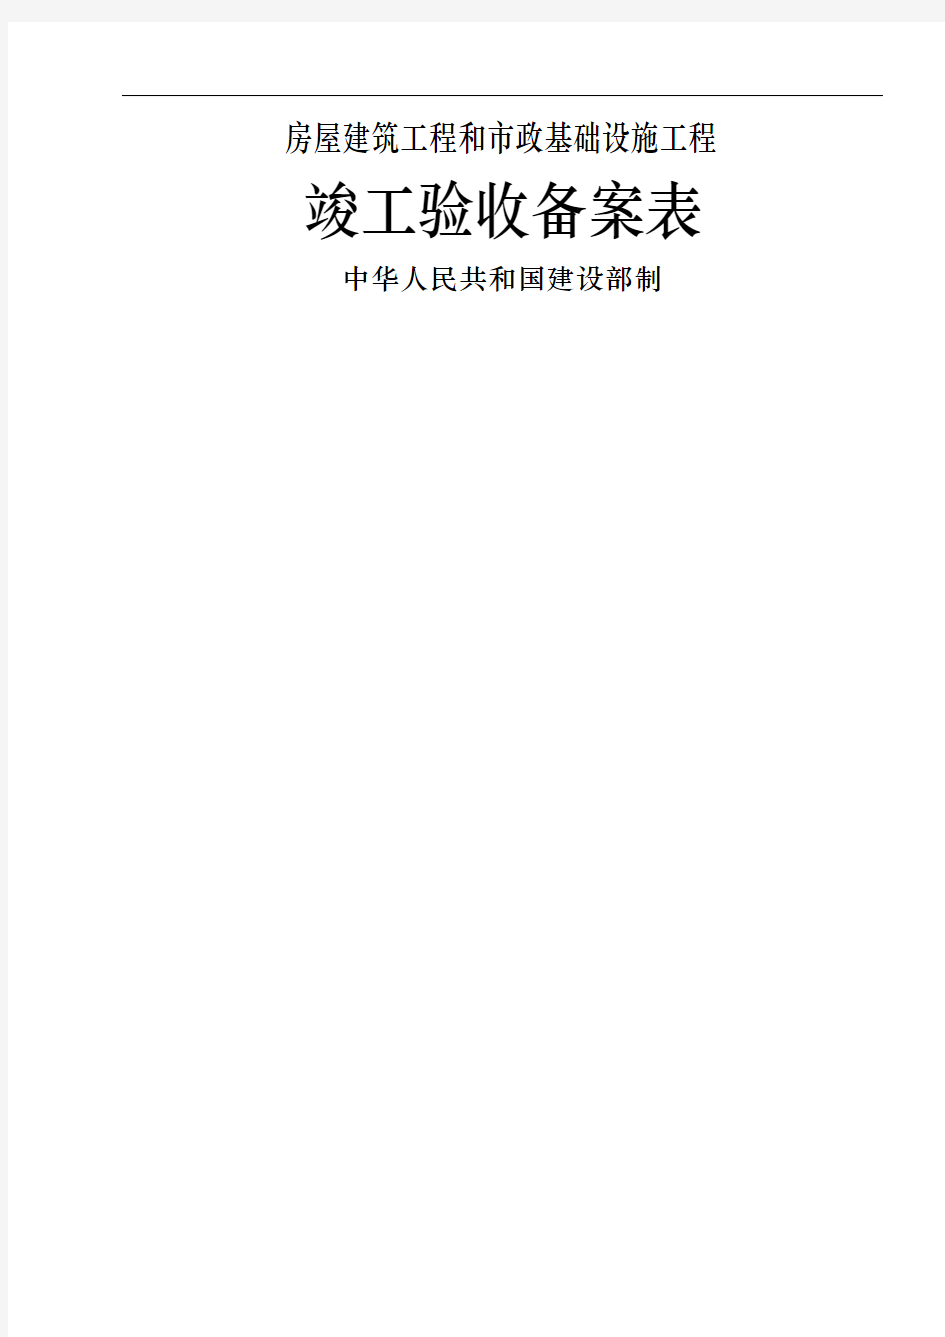 广东省统一用表竣工验收备案表填写范例